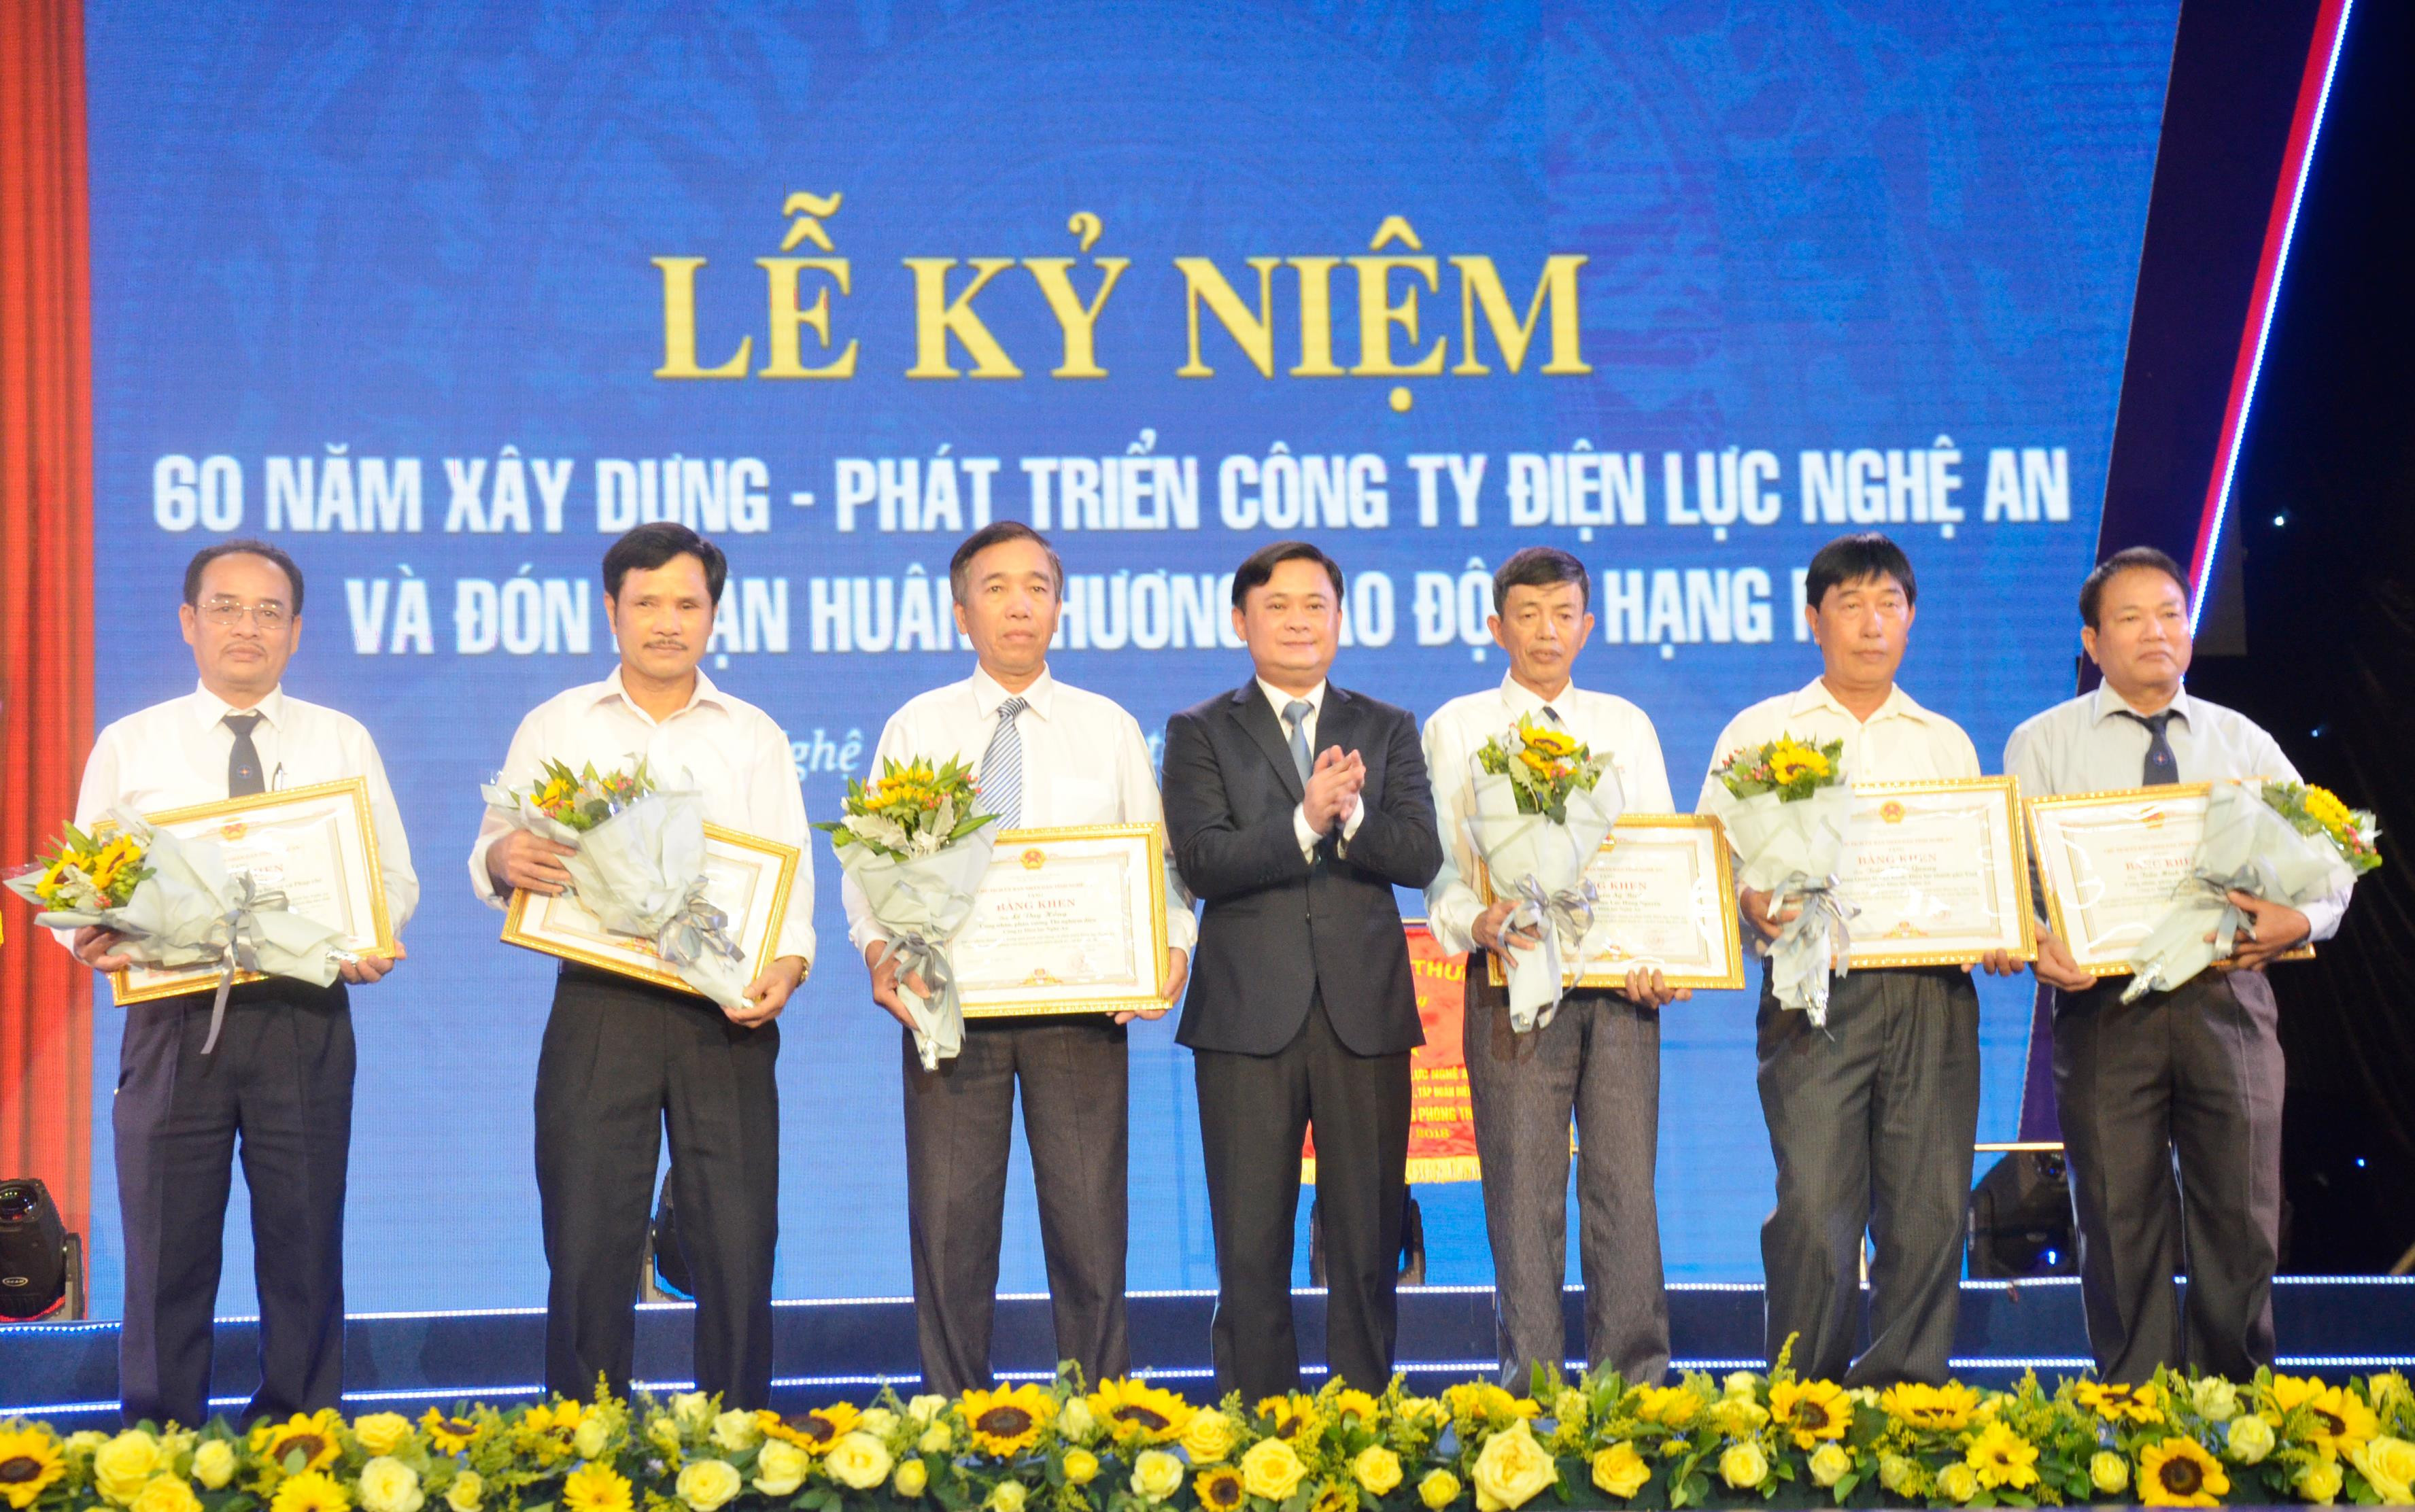 Chủ tịch UBND tỉnh Thái Thanh Quý trao bằng khen của Chủ tịch UBND tỉnh cho 6 cá nhân có thành tích xuất sắc của Công ty Điện lực Nghệ An. Ảnh: Thanh Lê